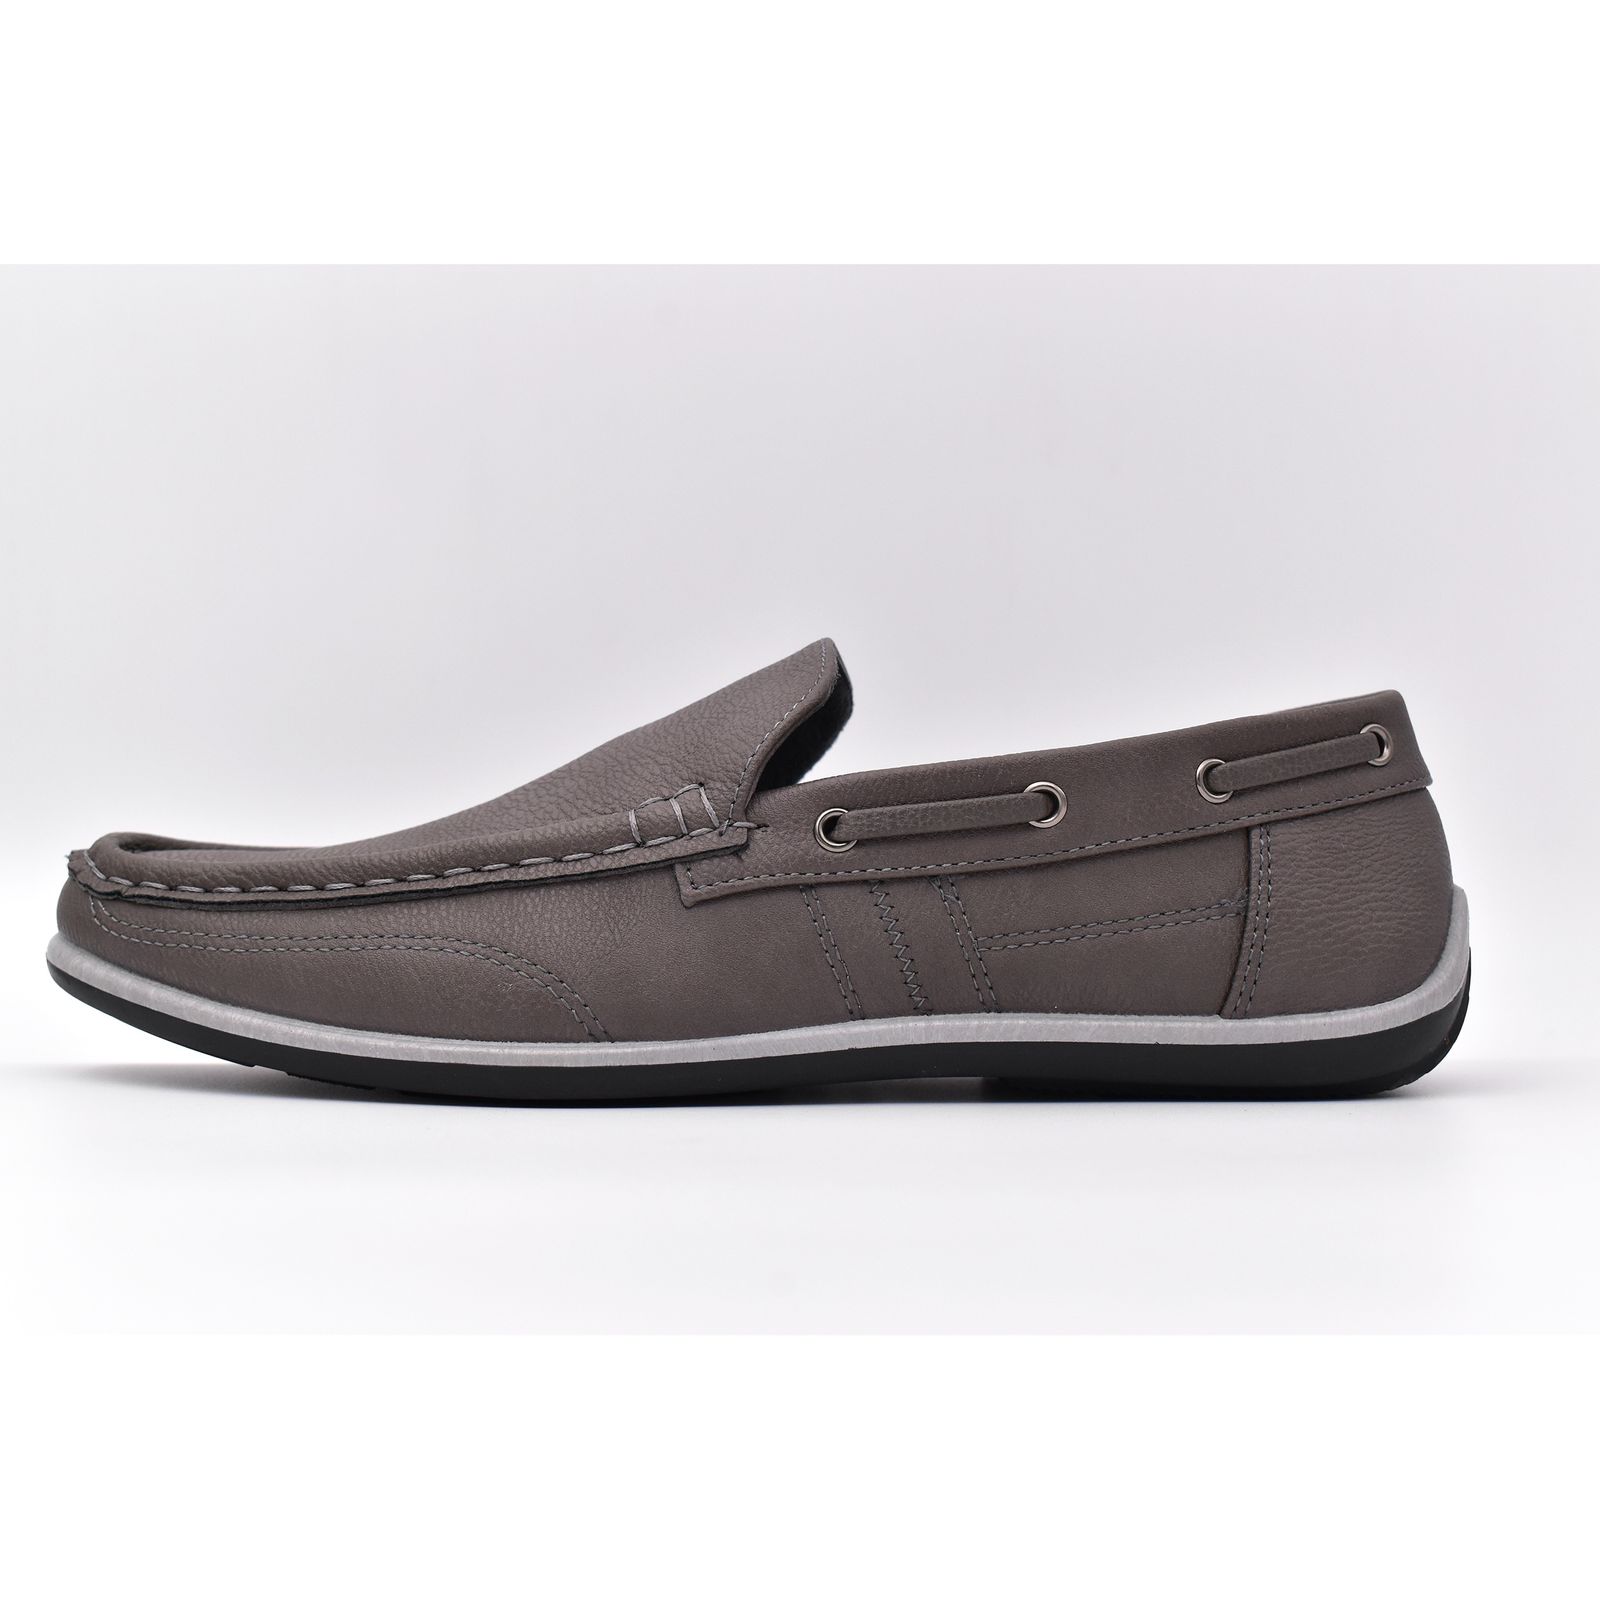 کفش روزمره مردانه پاما مدل KJ-056 کد G1539 -  - 6